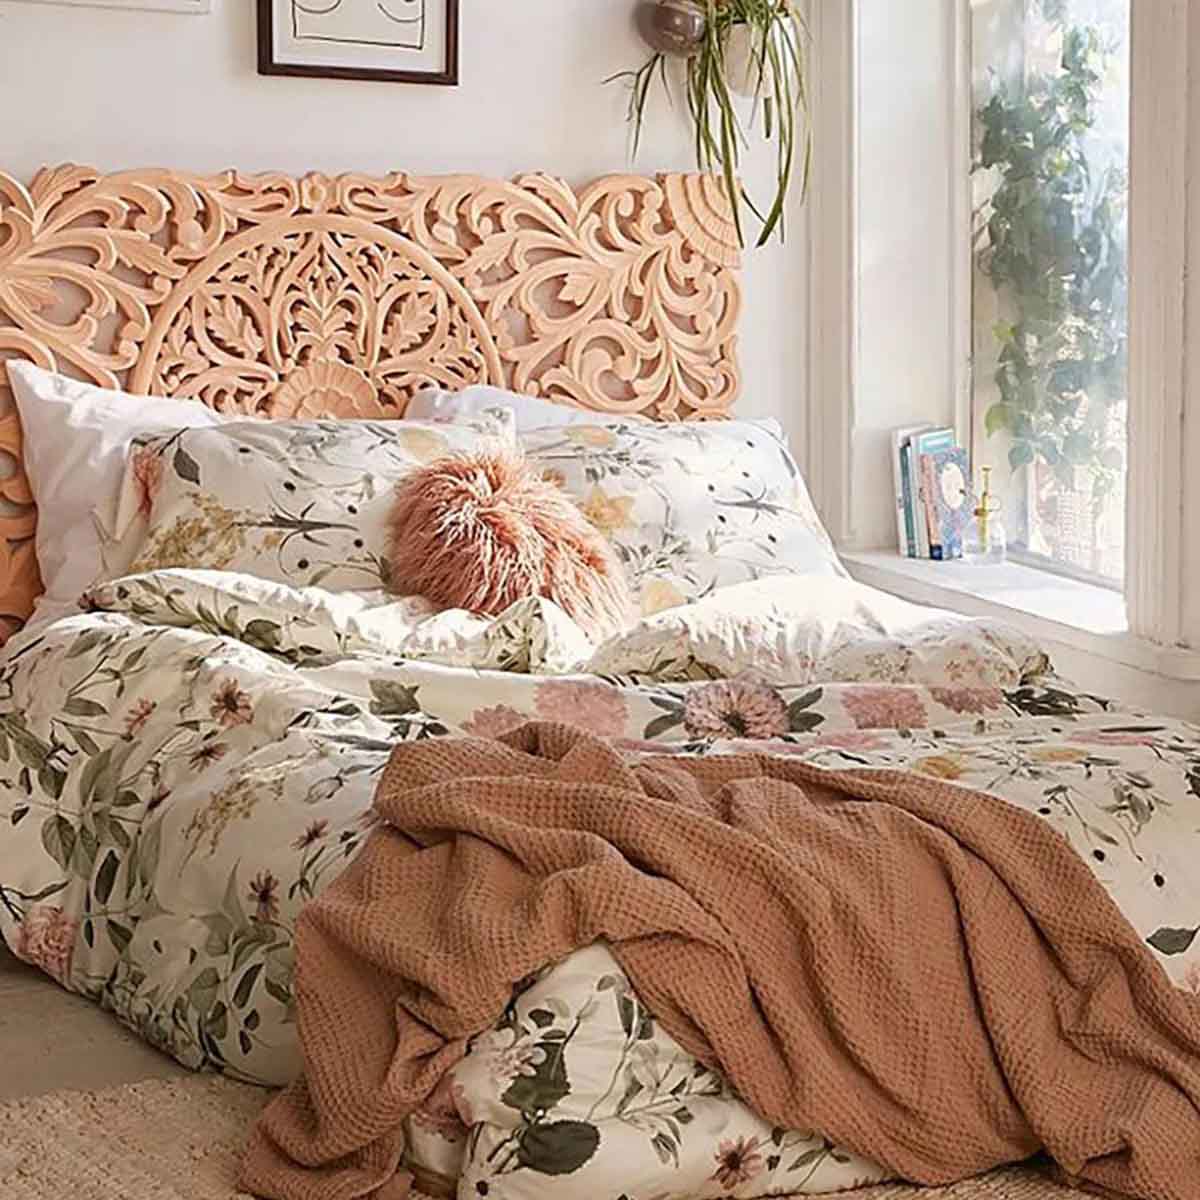 Phòng ngủ với họa tiết hoa tạo điểm nhấn.

Nguồn: Aliz's Wonderland